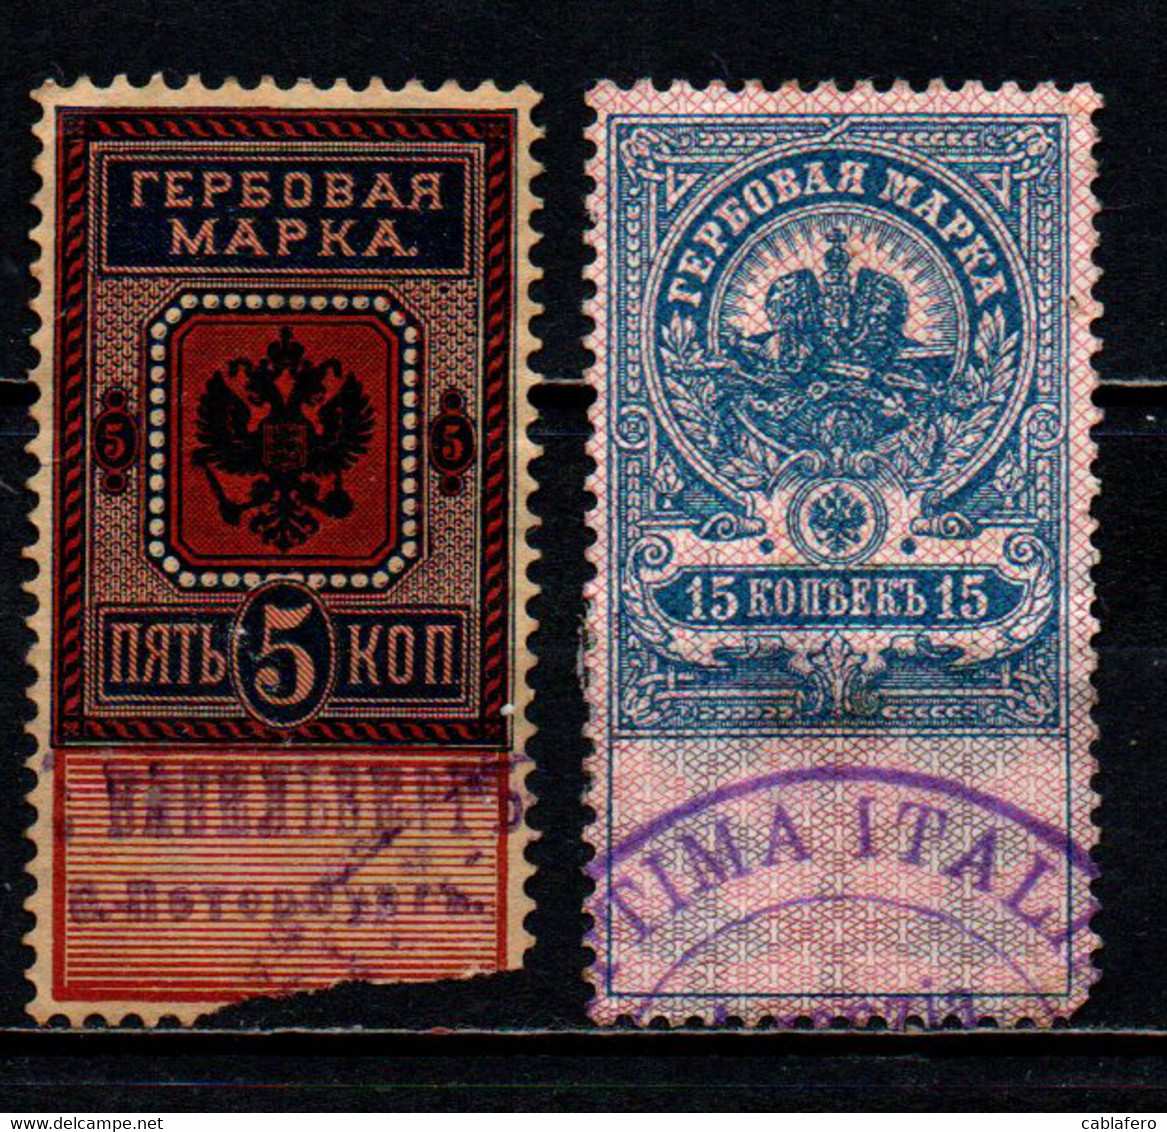 RUSSIA - MARCHE DA BOLLO - Revenue Stamps